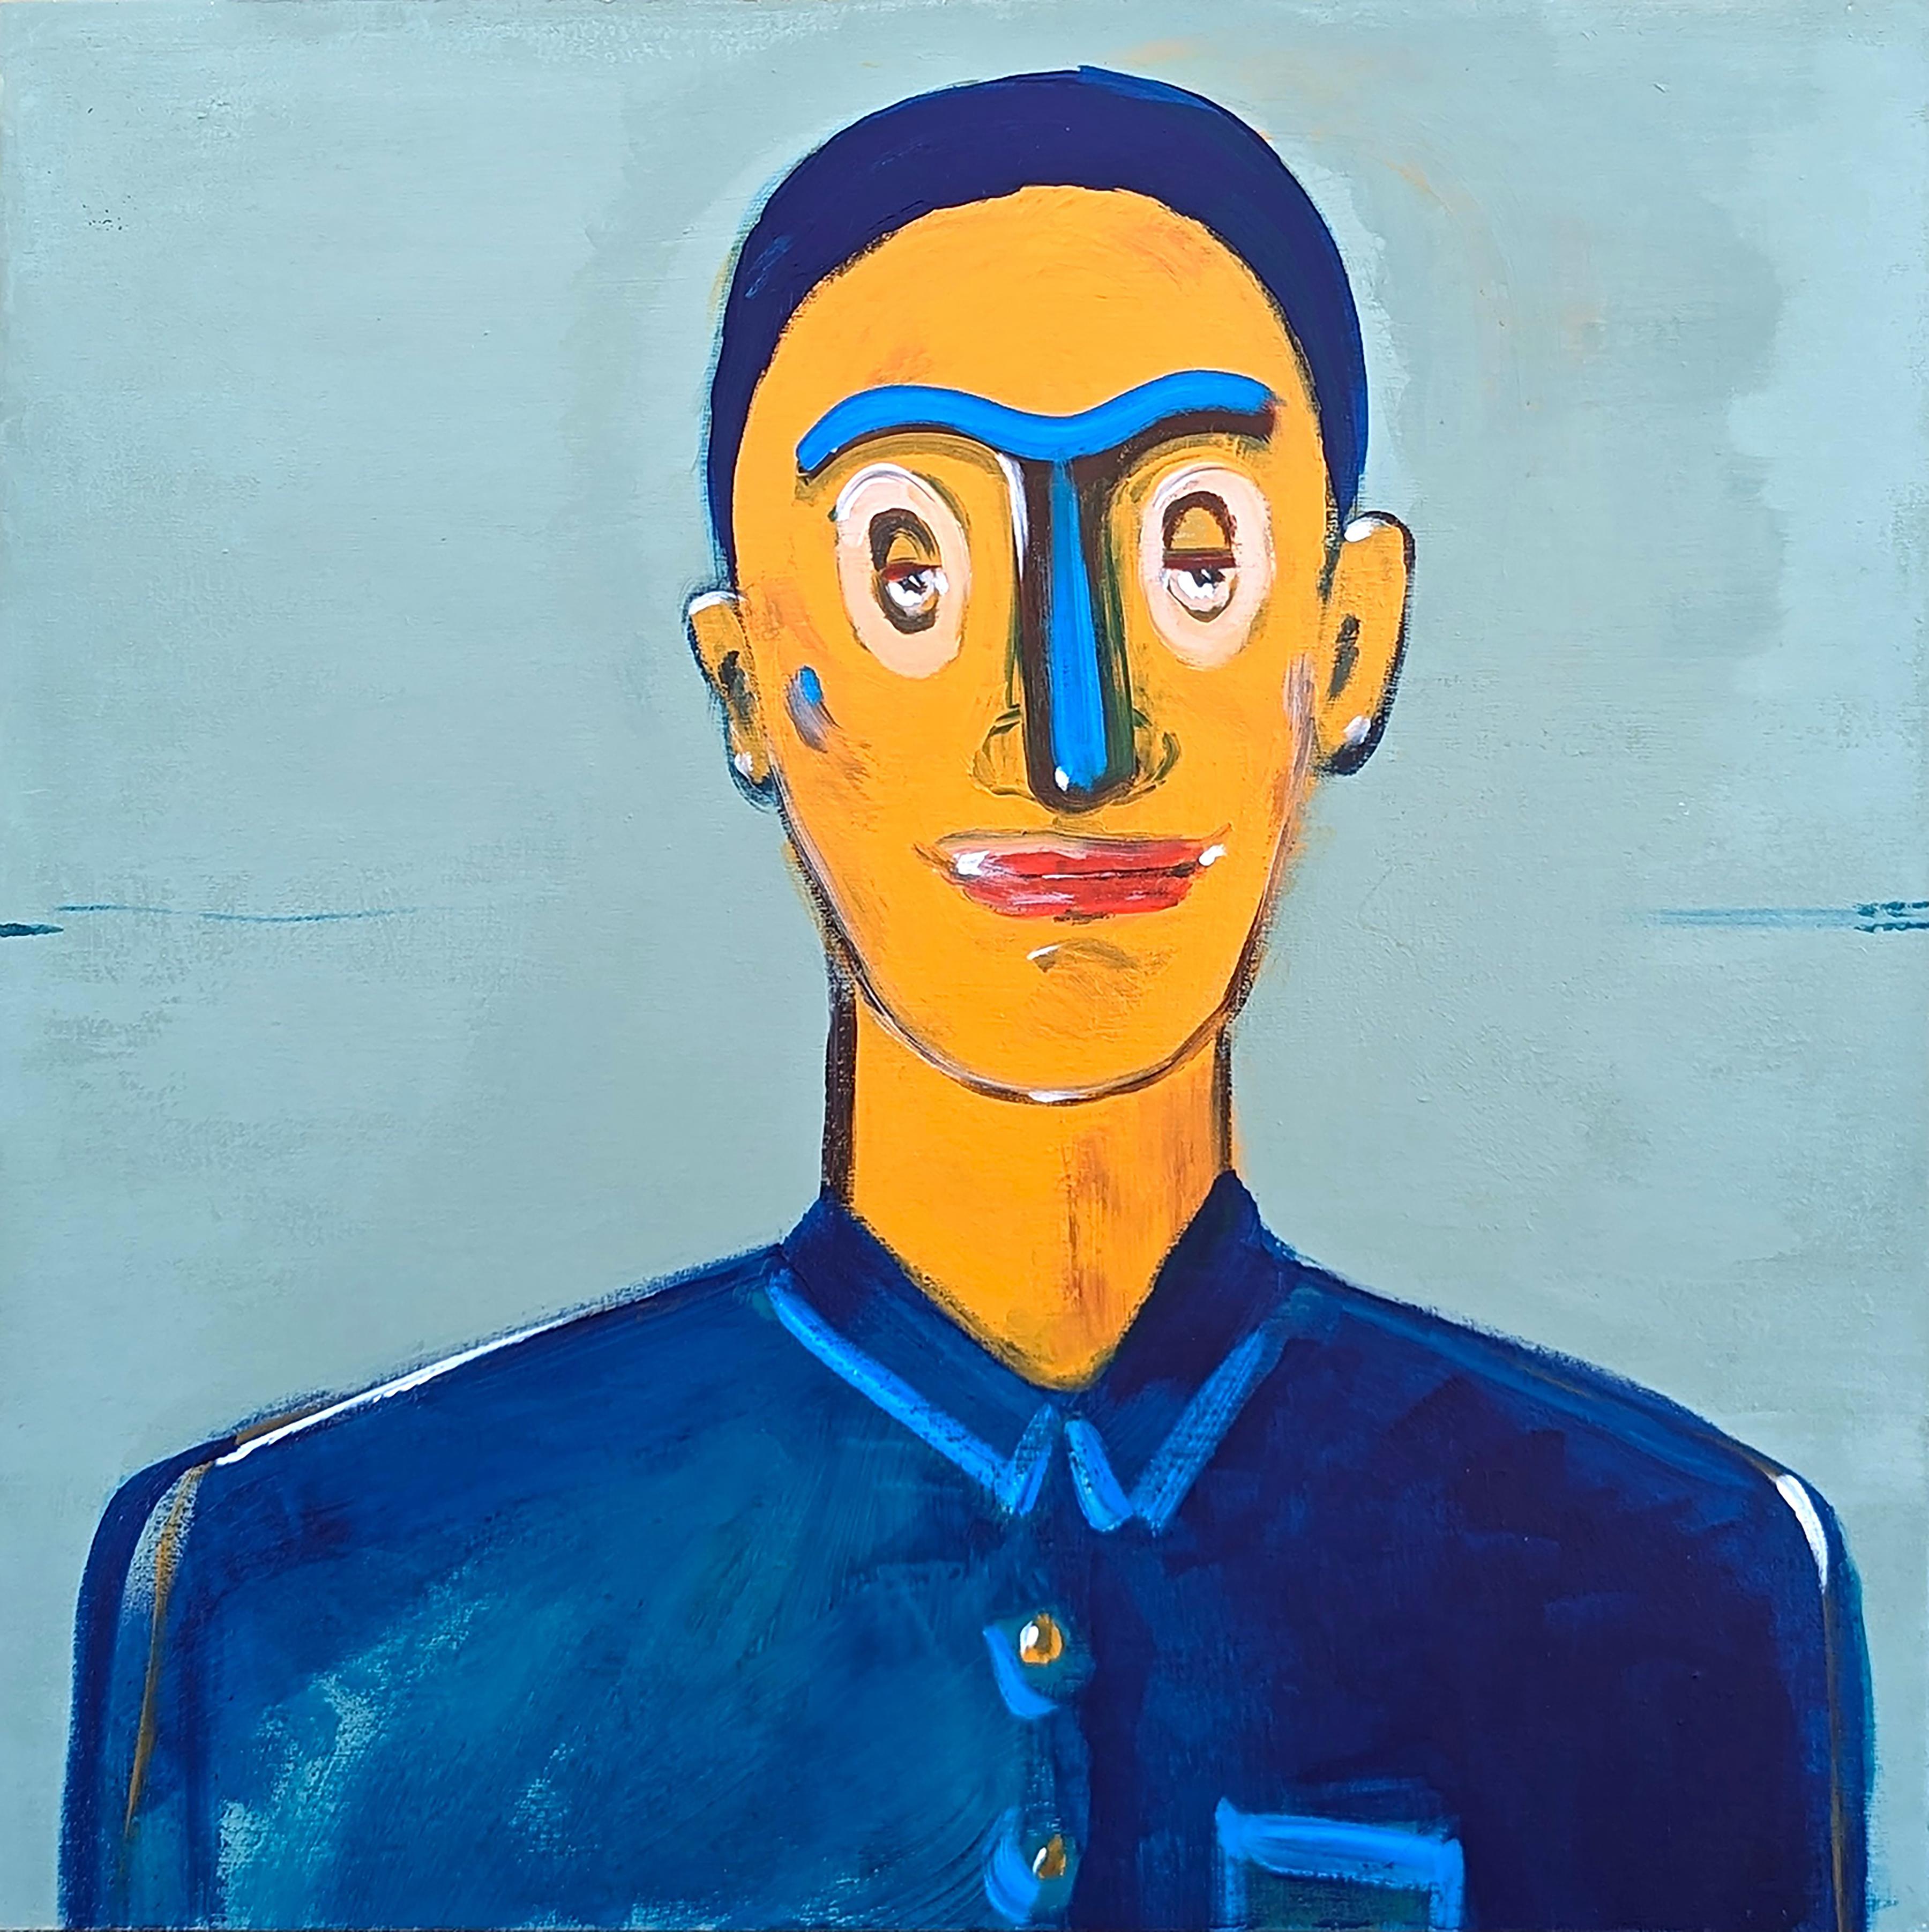 Moisés Villafuerte Portrait Painting - Contemporary Whimsical Abstract Portrait of a Male Figure Against Blue